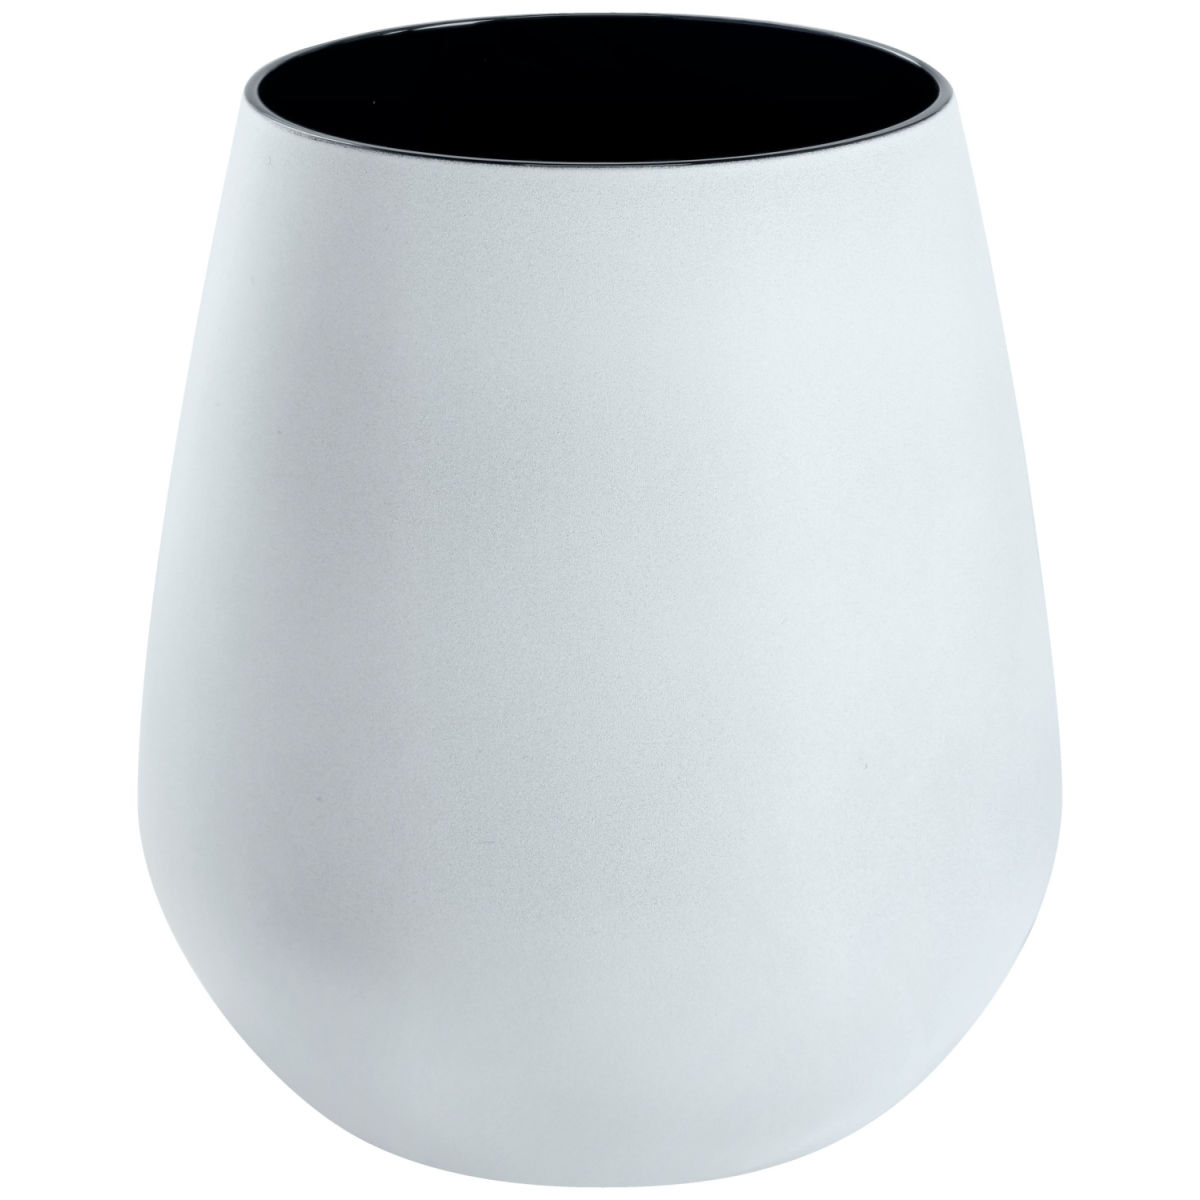 Vega Waterglas Dorisa; 420ml, 6.5x10 cm (ØxH); wit/zwart; 6 stuk / verpakking